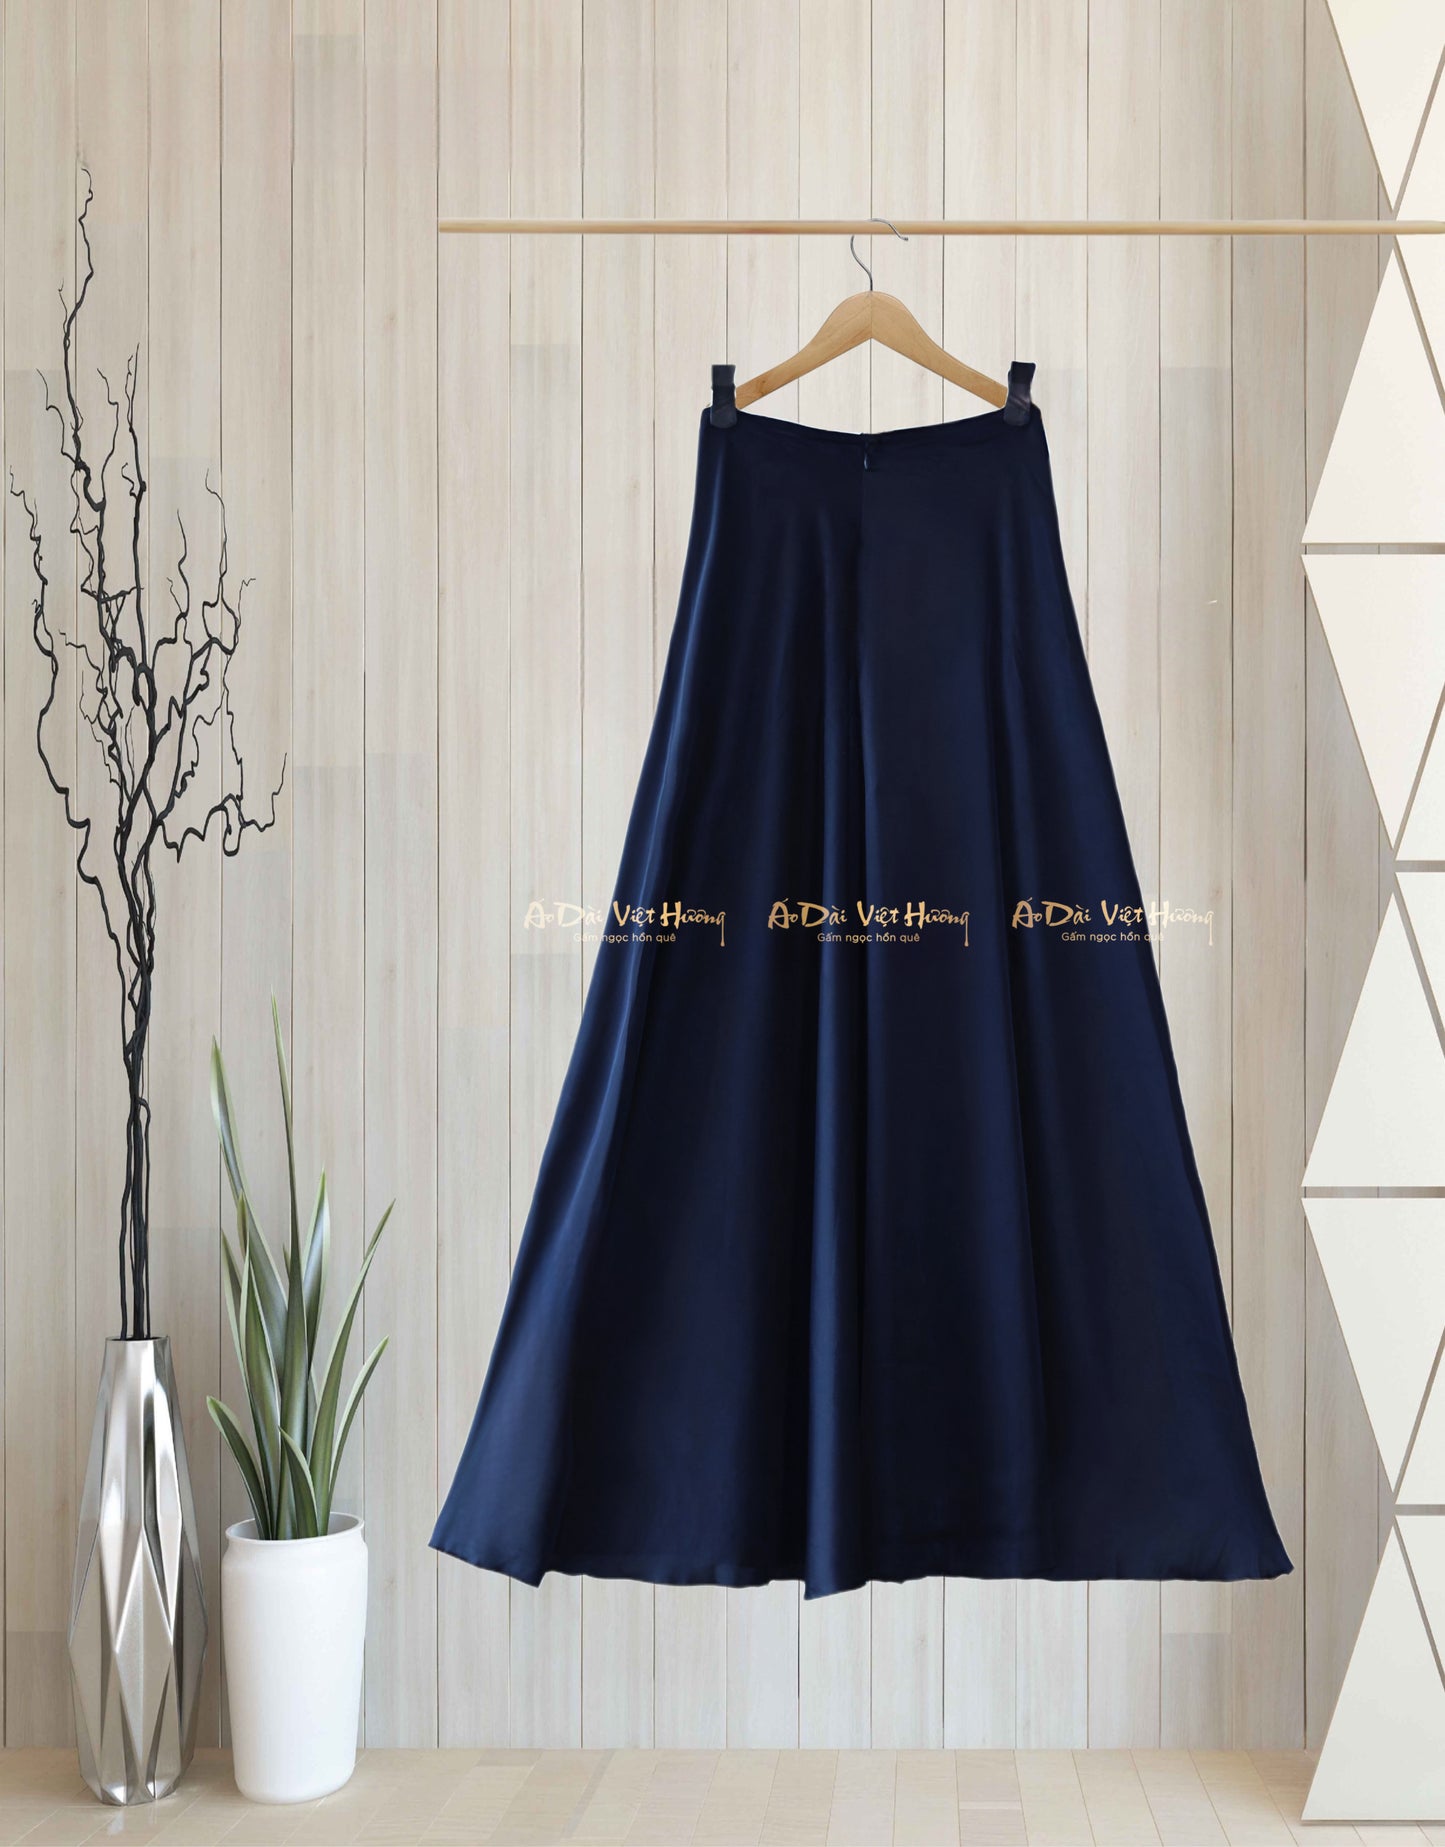 524 - Navy Blue Thái Tuấn Silk Skirt Pants (Quần Váy Ống Xéo Lụa Thái Tuấn Xanh Đen)